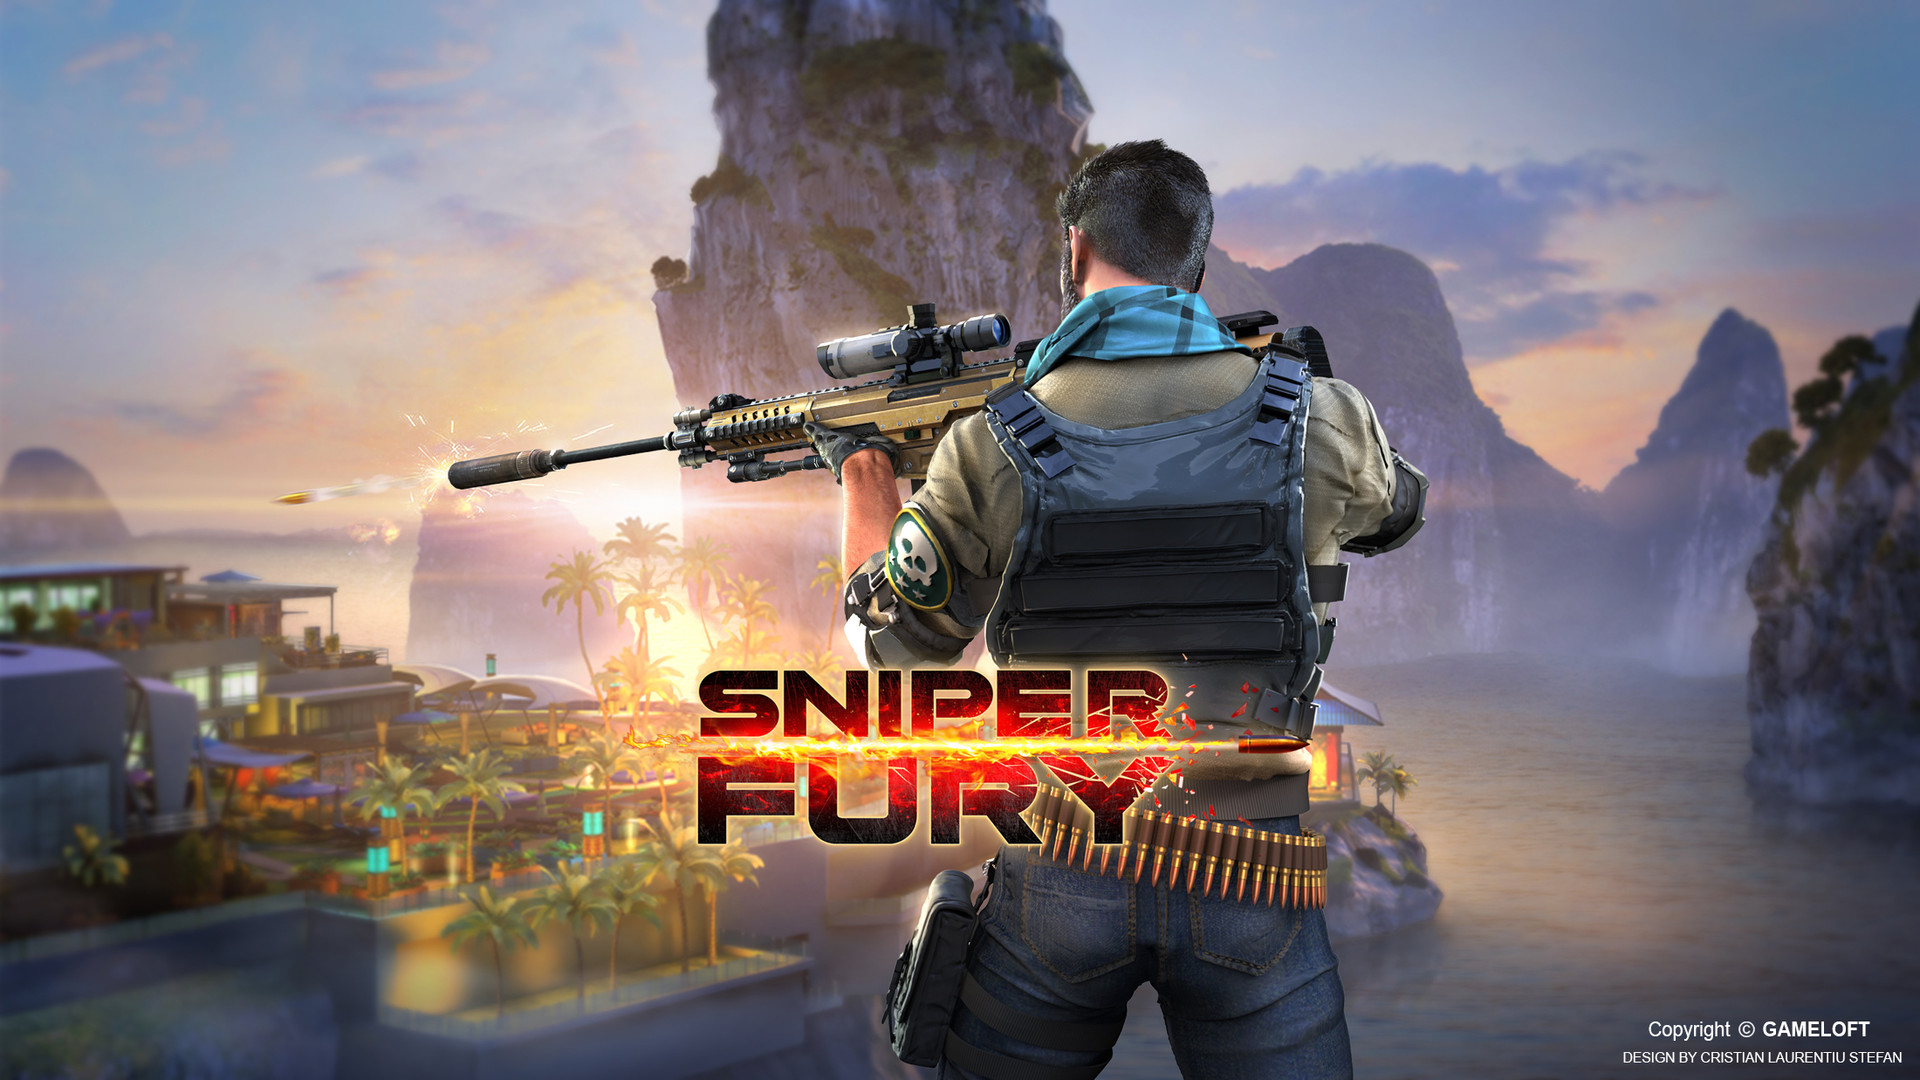 sniper fury trainer 3.2